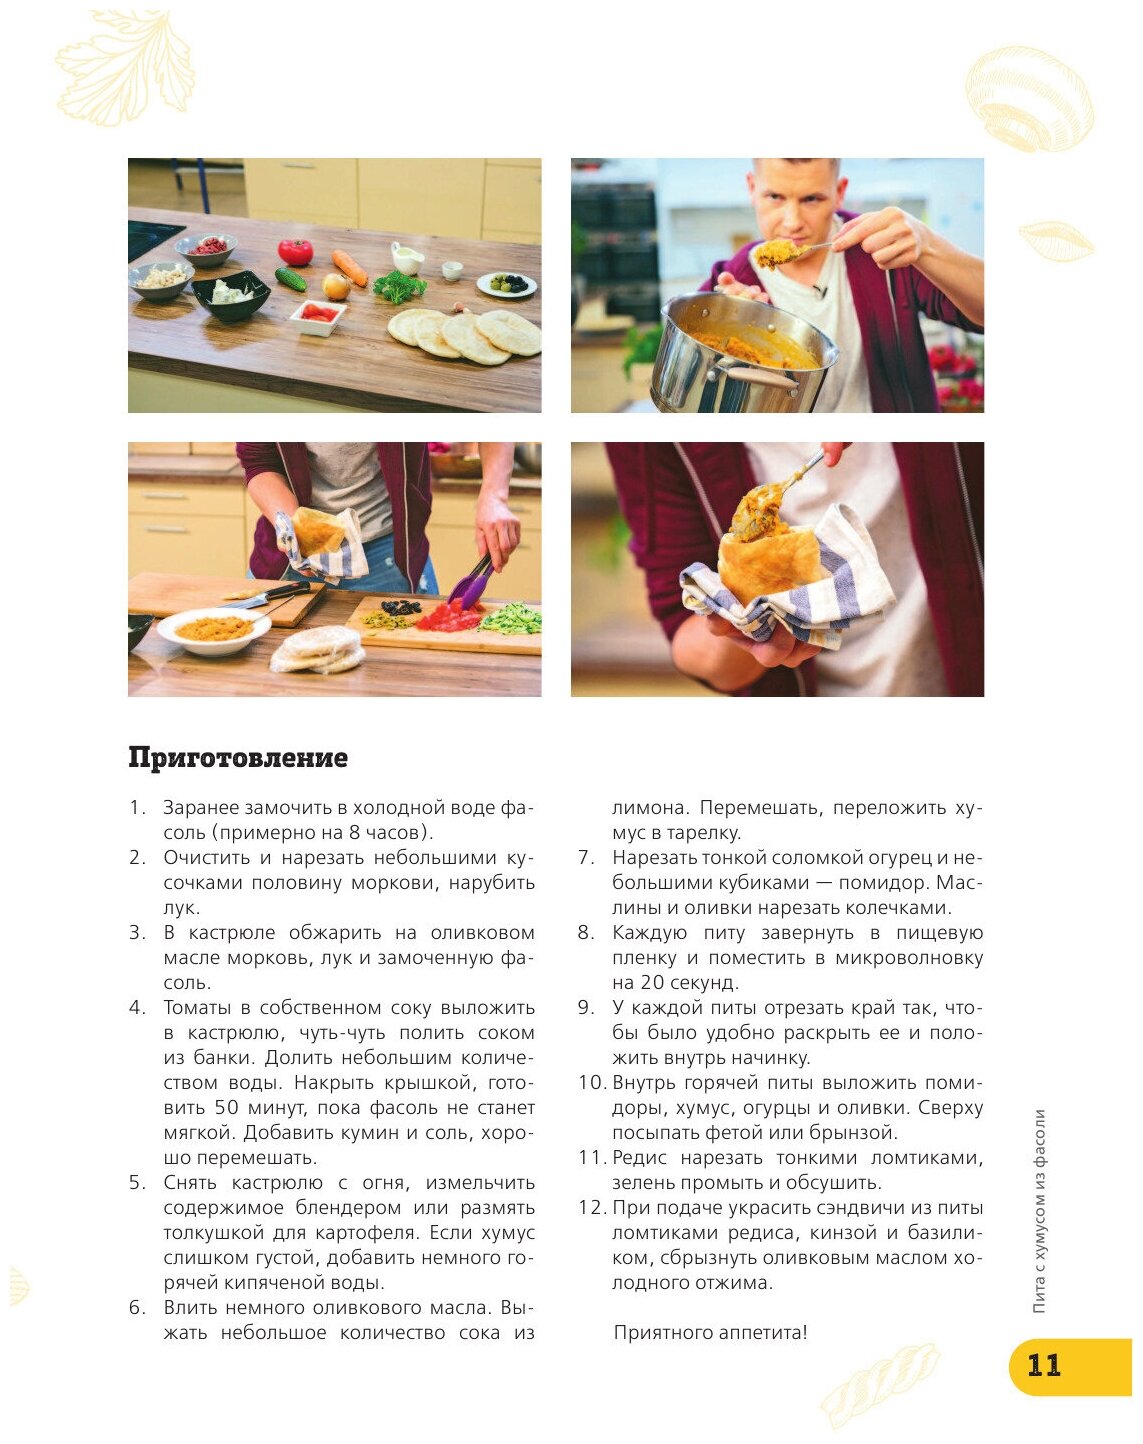 ПроСТО кухня с Александром Бельковичем - фото №7